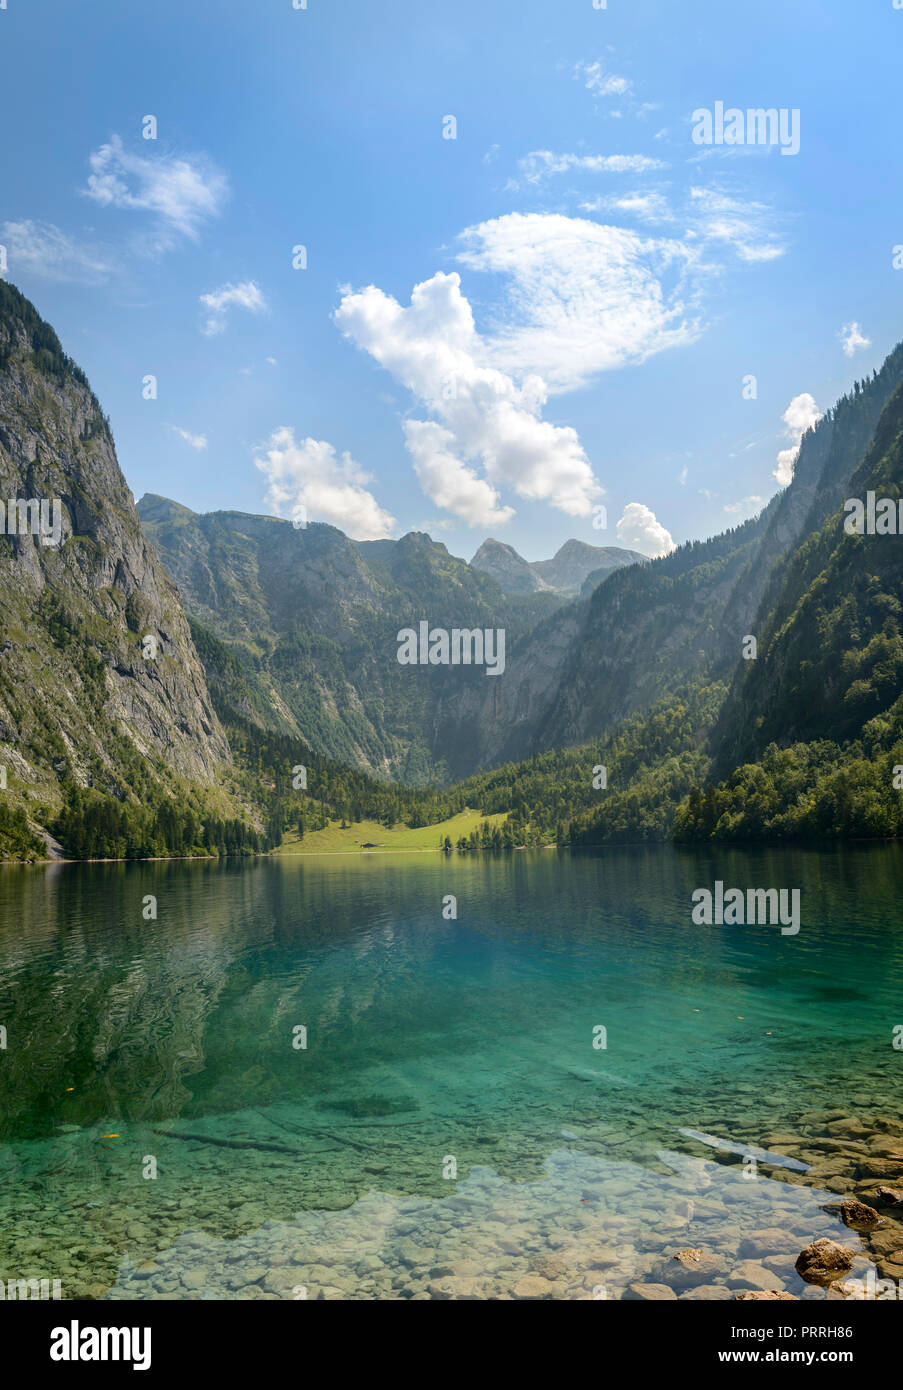 Obersee, lac de montagne, paysage de montagne, salet am Königssee, le parc national de Berchtesgaden, Berchtesgadener Land Banque D'Images